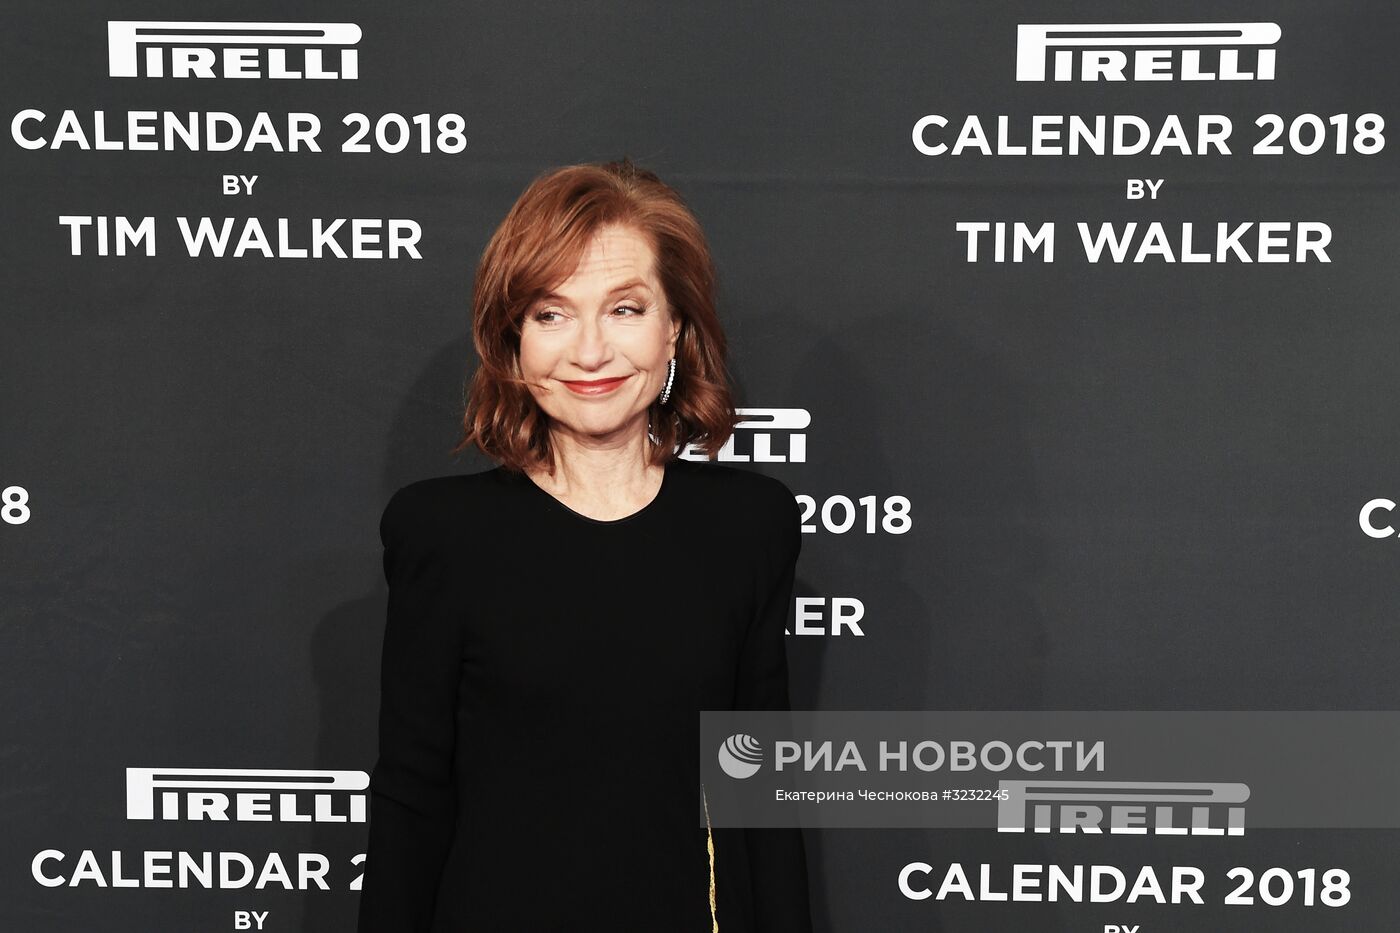 Представление нового календаря Pirelli 2018 года в Нью-Йорке